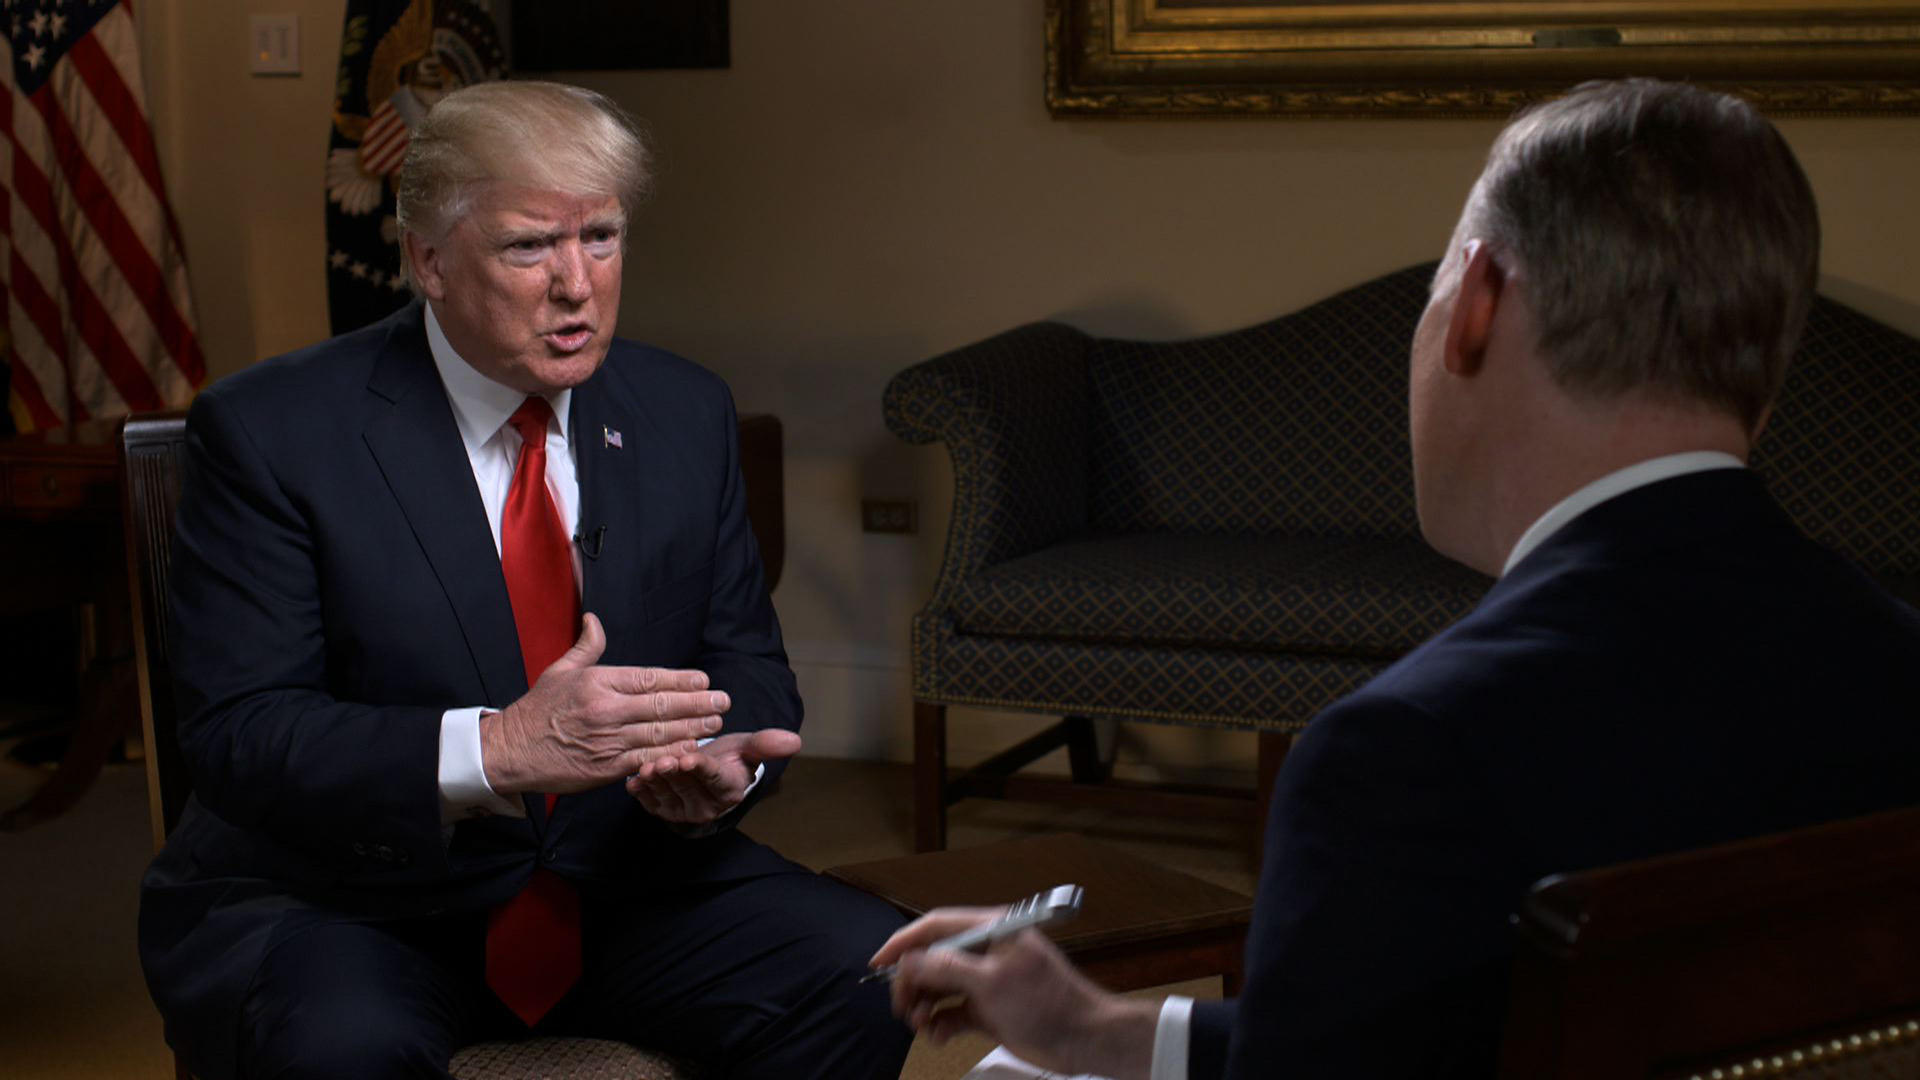 Trump termina de manera abrupta una entrevista con CBS tras pregunta sobre supuesto espionaje